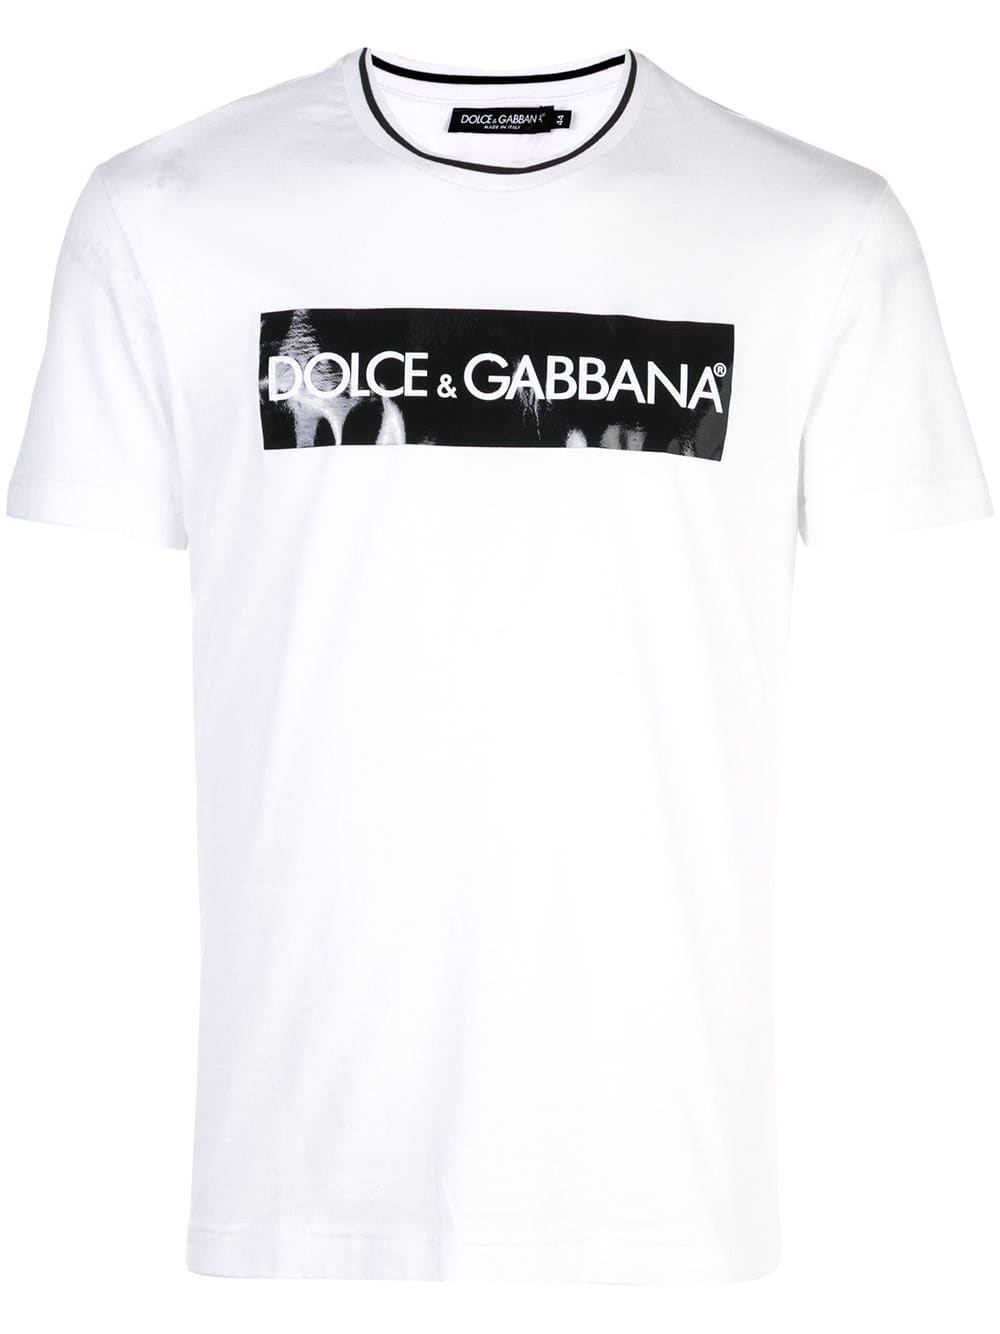 dolce & gabbana shirt price